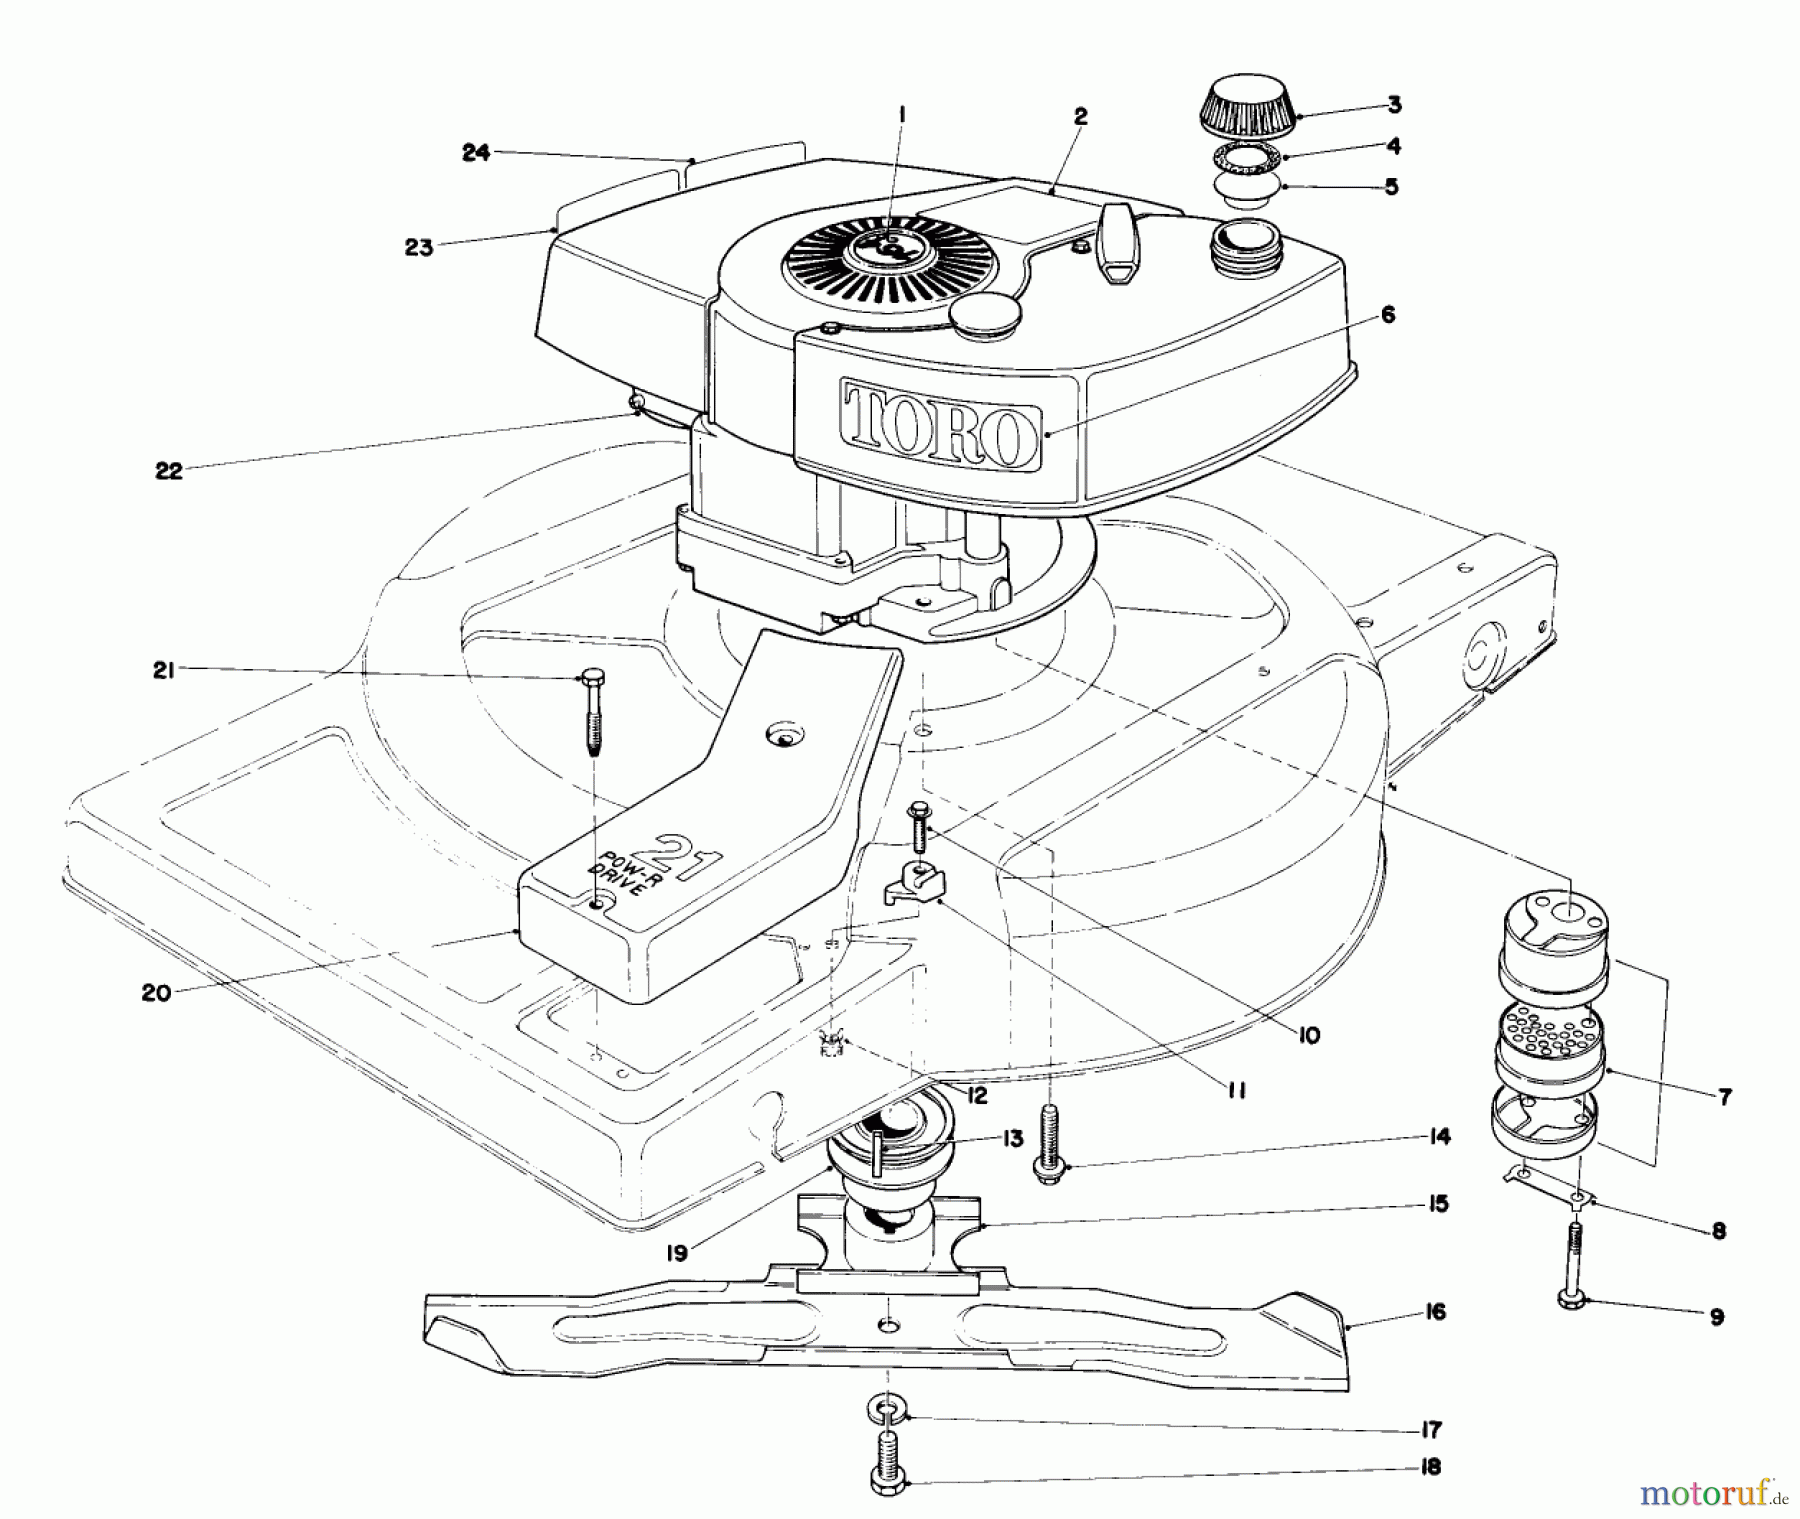  Toro Neu Mowers, Walk-Behind Seite 1 18095 - Toro Lawnmower, 1979 (9000001-9999999) ENGINE ASSEMBLY